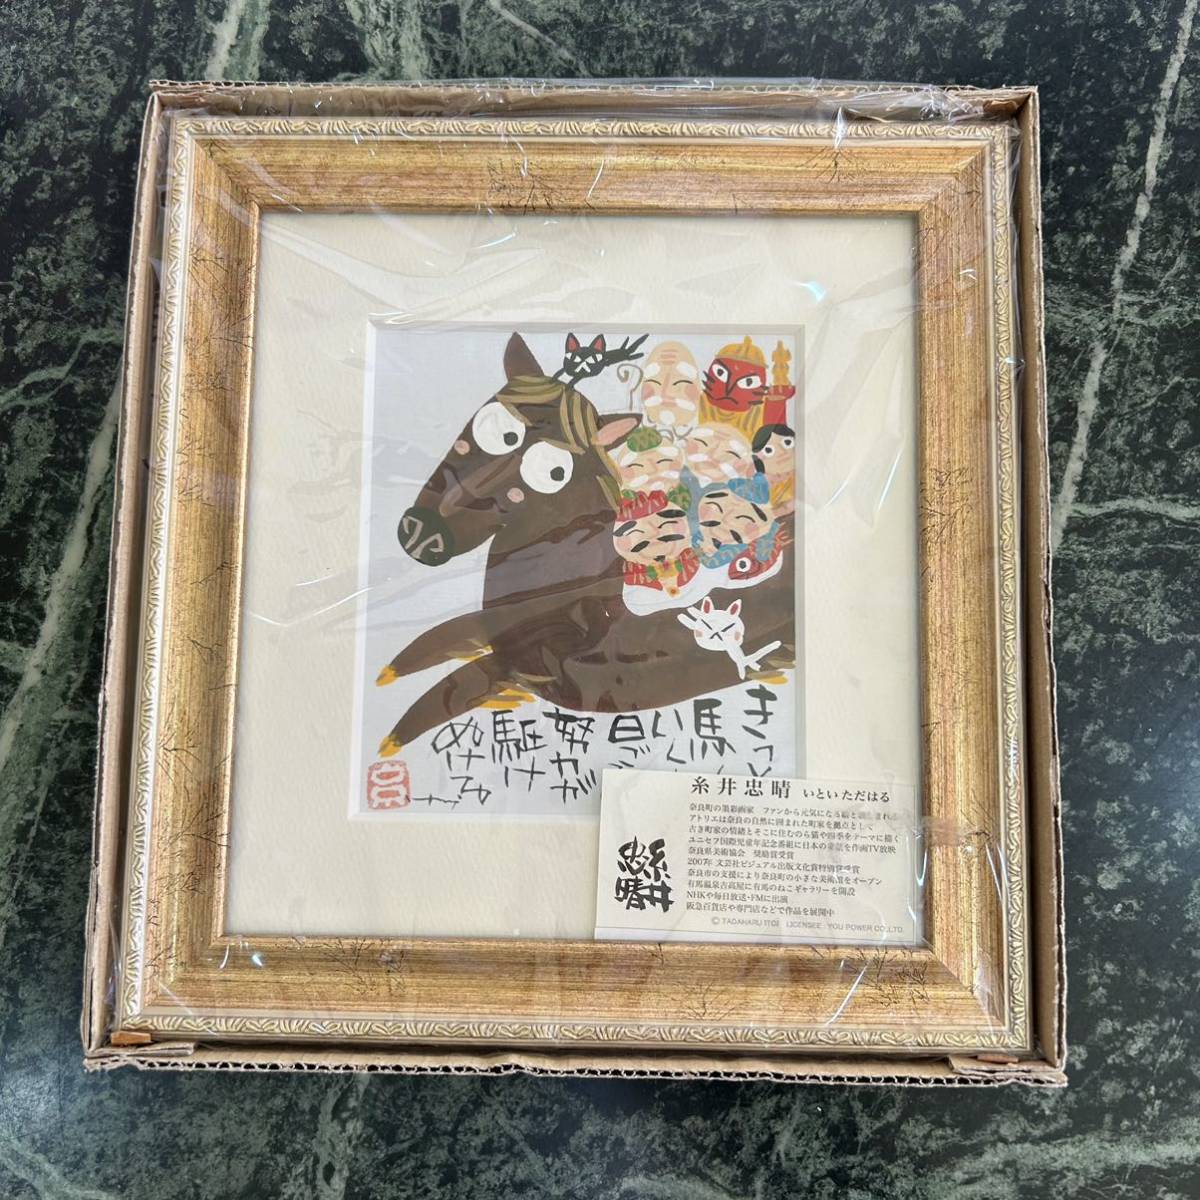 [Nuevo artículo] Tadaharu Itoi★Marco de arte Estoy seguro de que el caballo vendrá Panel de arte para colgar en la pared Marco de fotos Pintura interior enmarcada Estilo japonés Pintura japonesa, pasatiempo, cultura, obra de arte, otros